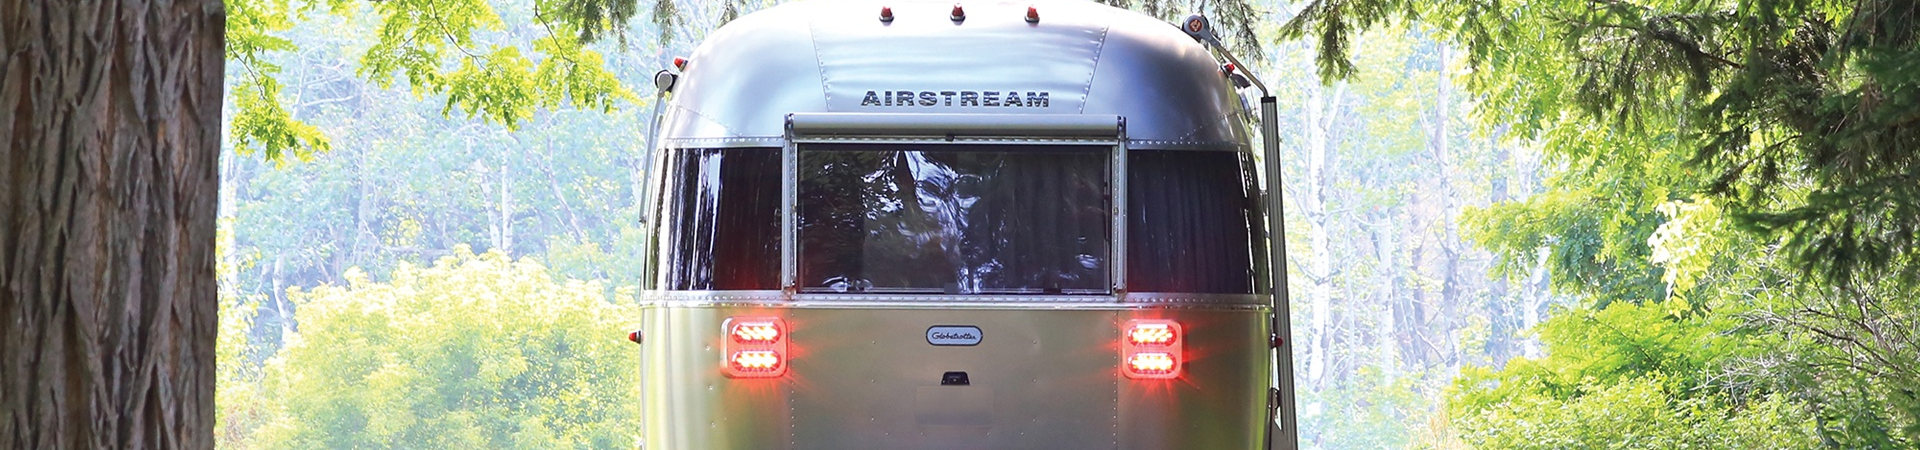 2019 Airstream for sale in Airstream Inland Empire, Temecula, California